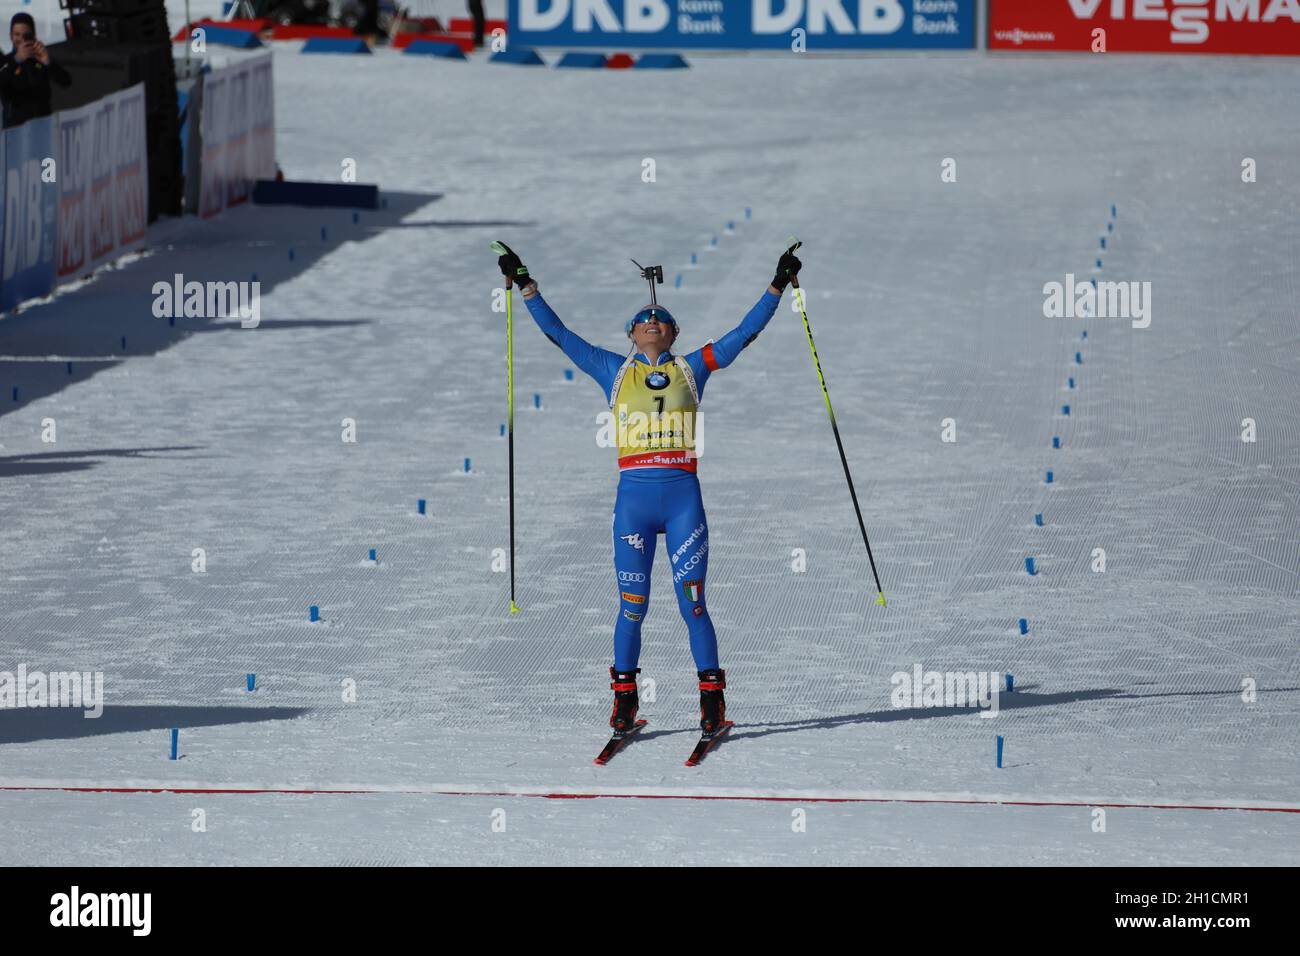 Dorothea Wierer (Italien) zeigt ihr Glück nach dem WM-Titel bei der IBU Biathlon-Weltmeisterschaft Antholz 2020 Foto Stock